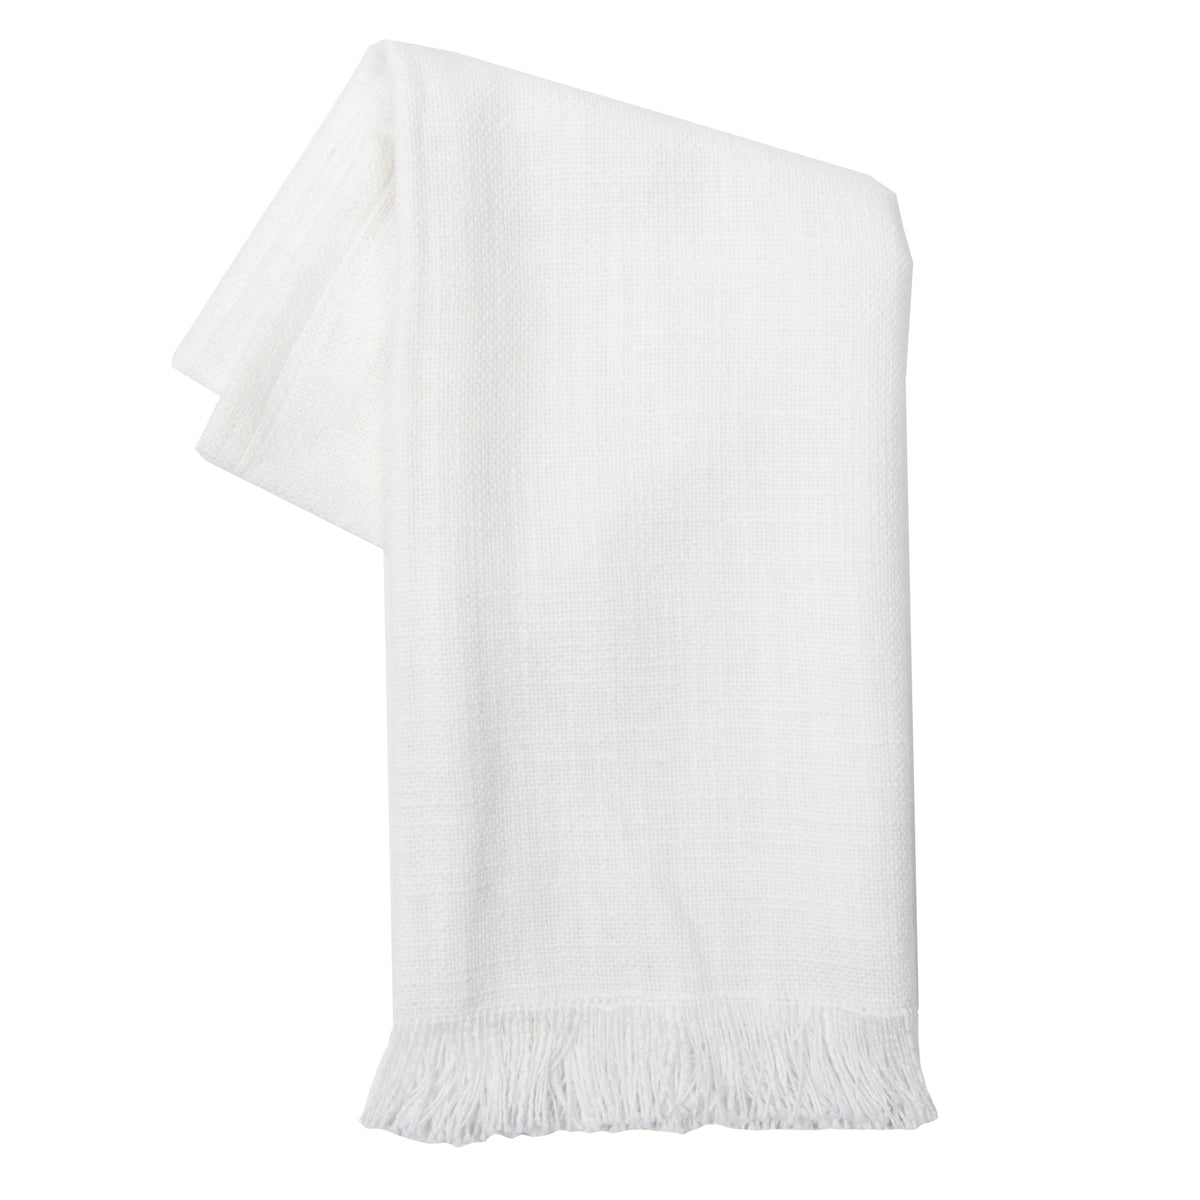 Tea Towel - Dunroven House Slub Texture Solid Frayed Towel